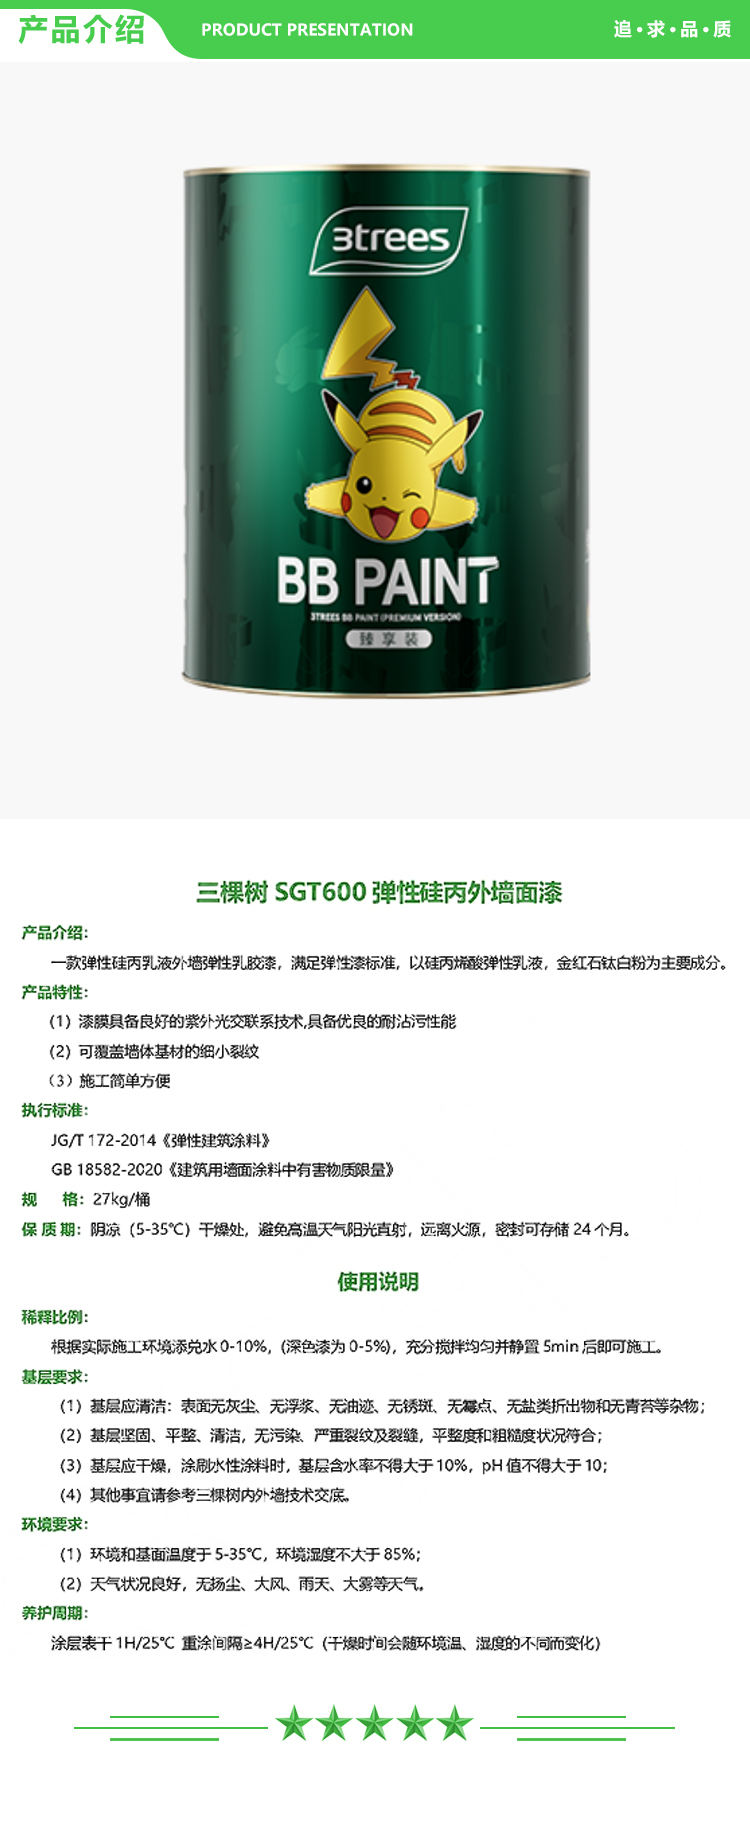 三棵树 SGT600 弹性硅丙外墙面漆 27kg-桶 可调色 弹性薄涂 弹性外墙乳胶漆系列 2.jpg